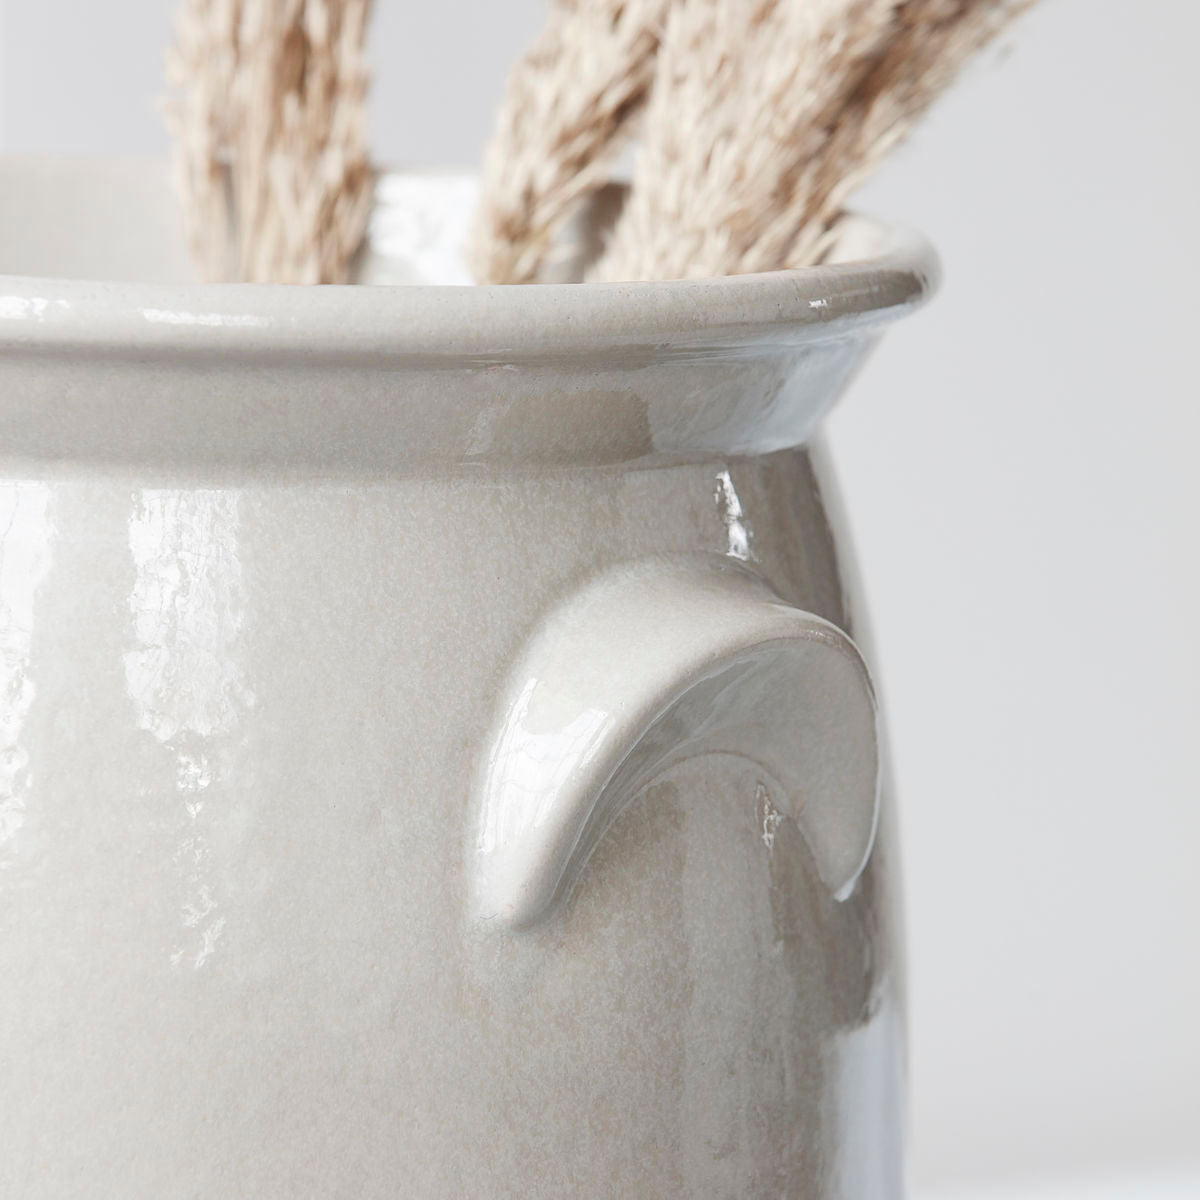 Meraki Ceramic jar, Shellish grey